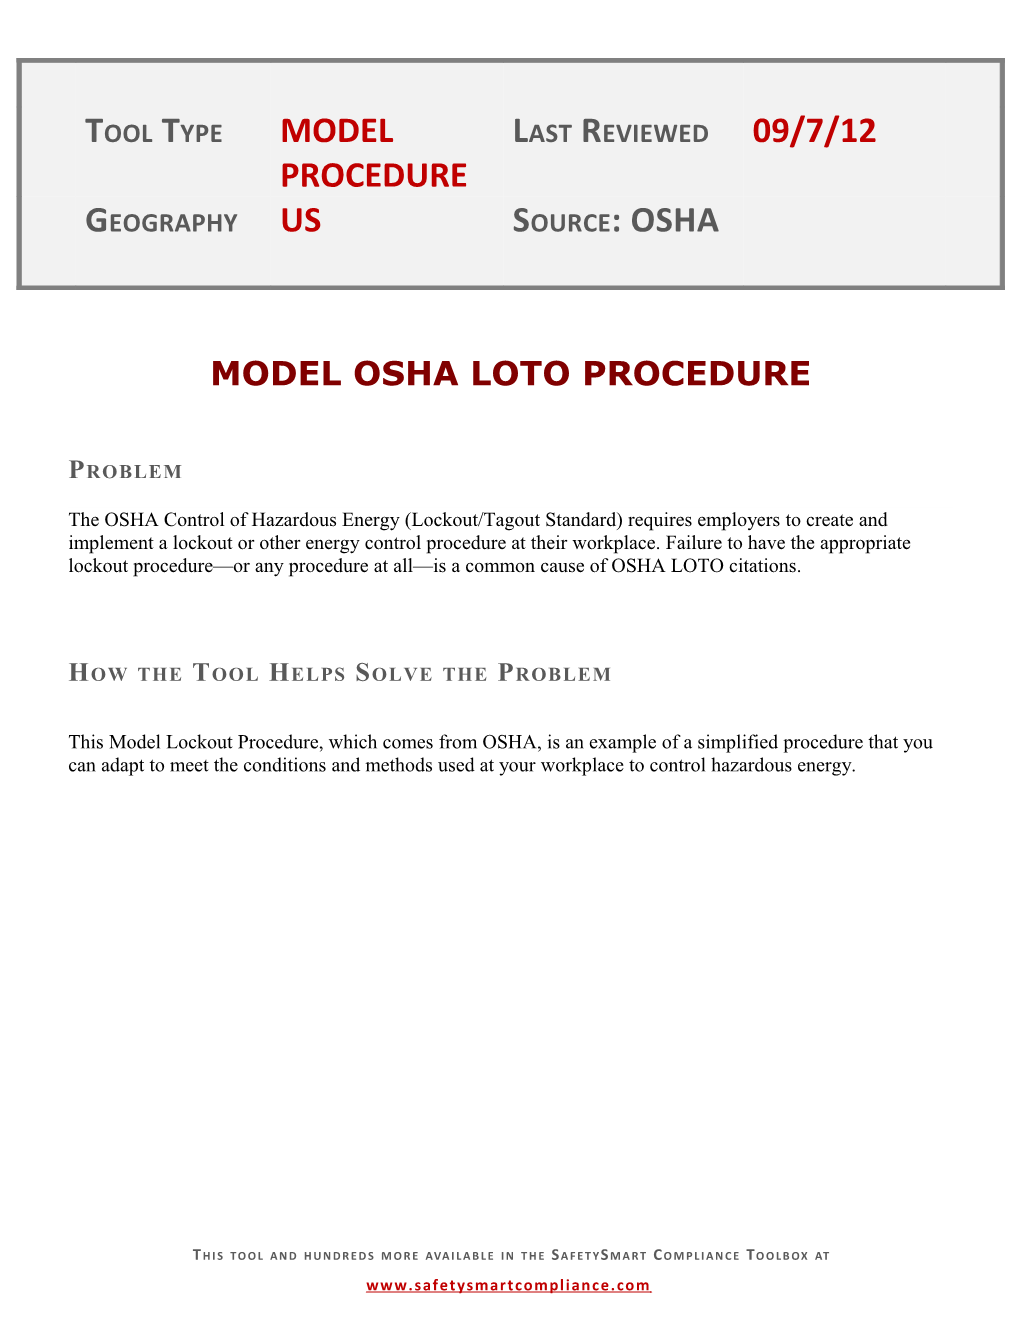 Model Osha Loto Procedure